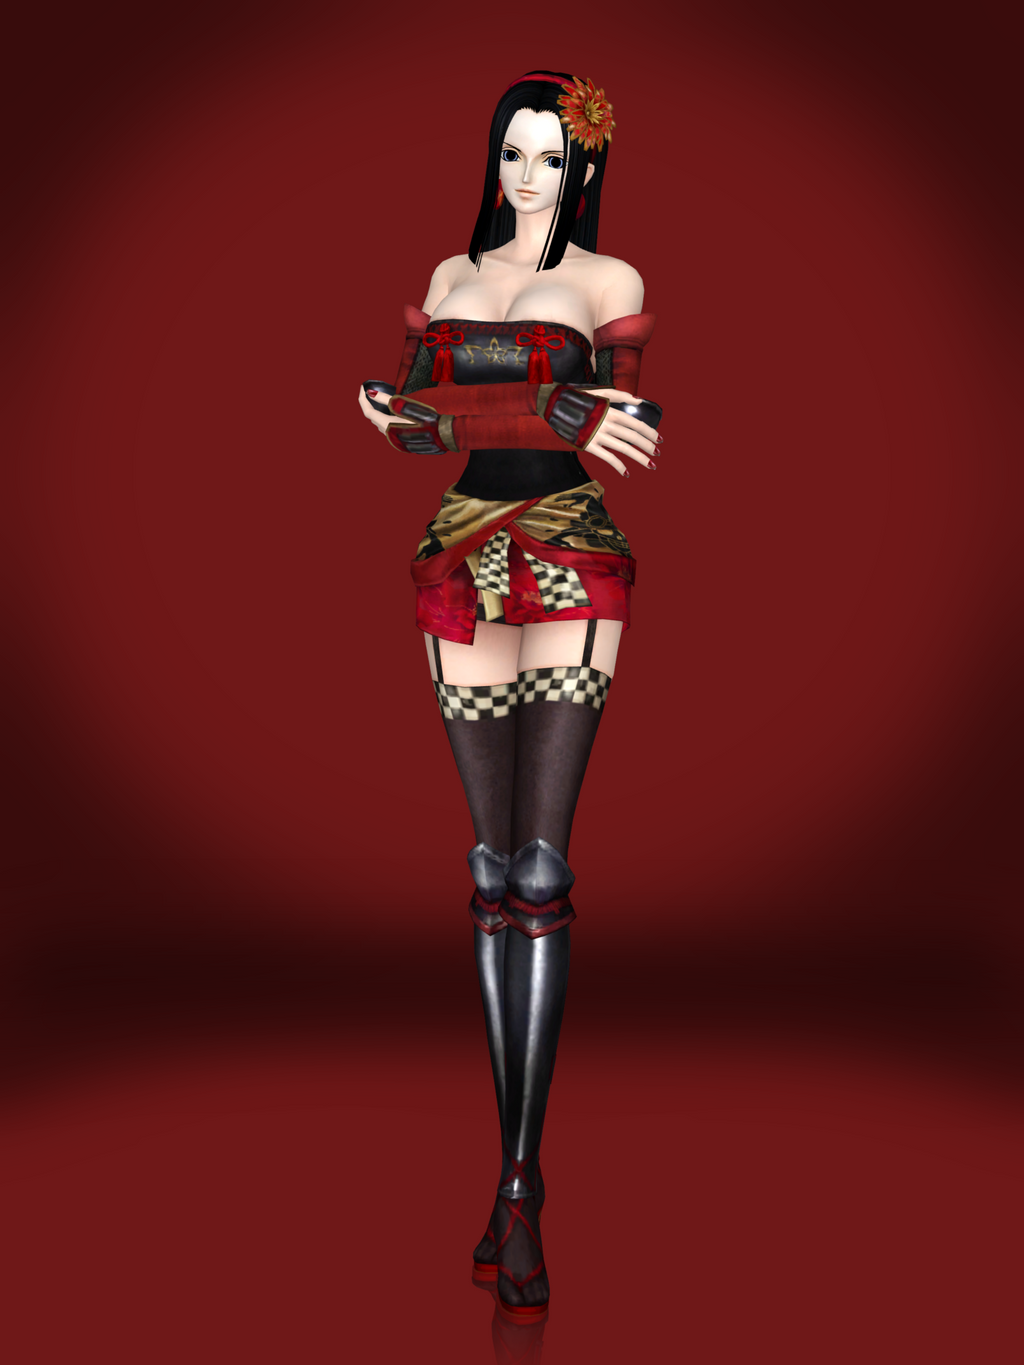 Nico Robin (Kai DLC) by Sticklove on DeviantArt1024 x 1365